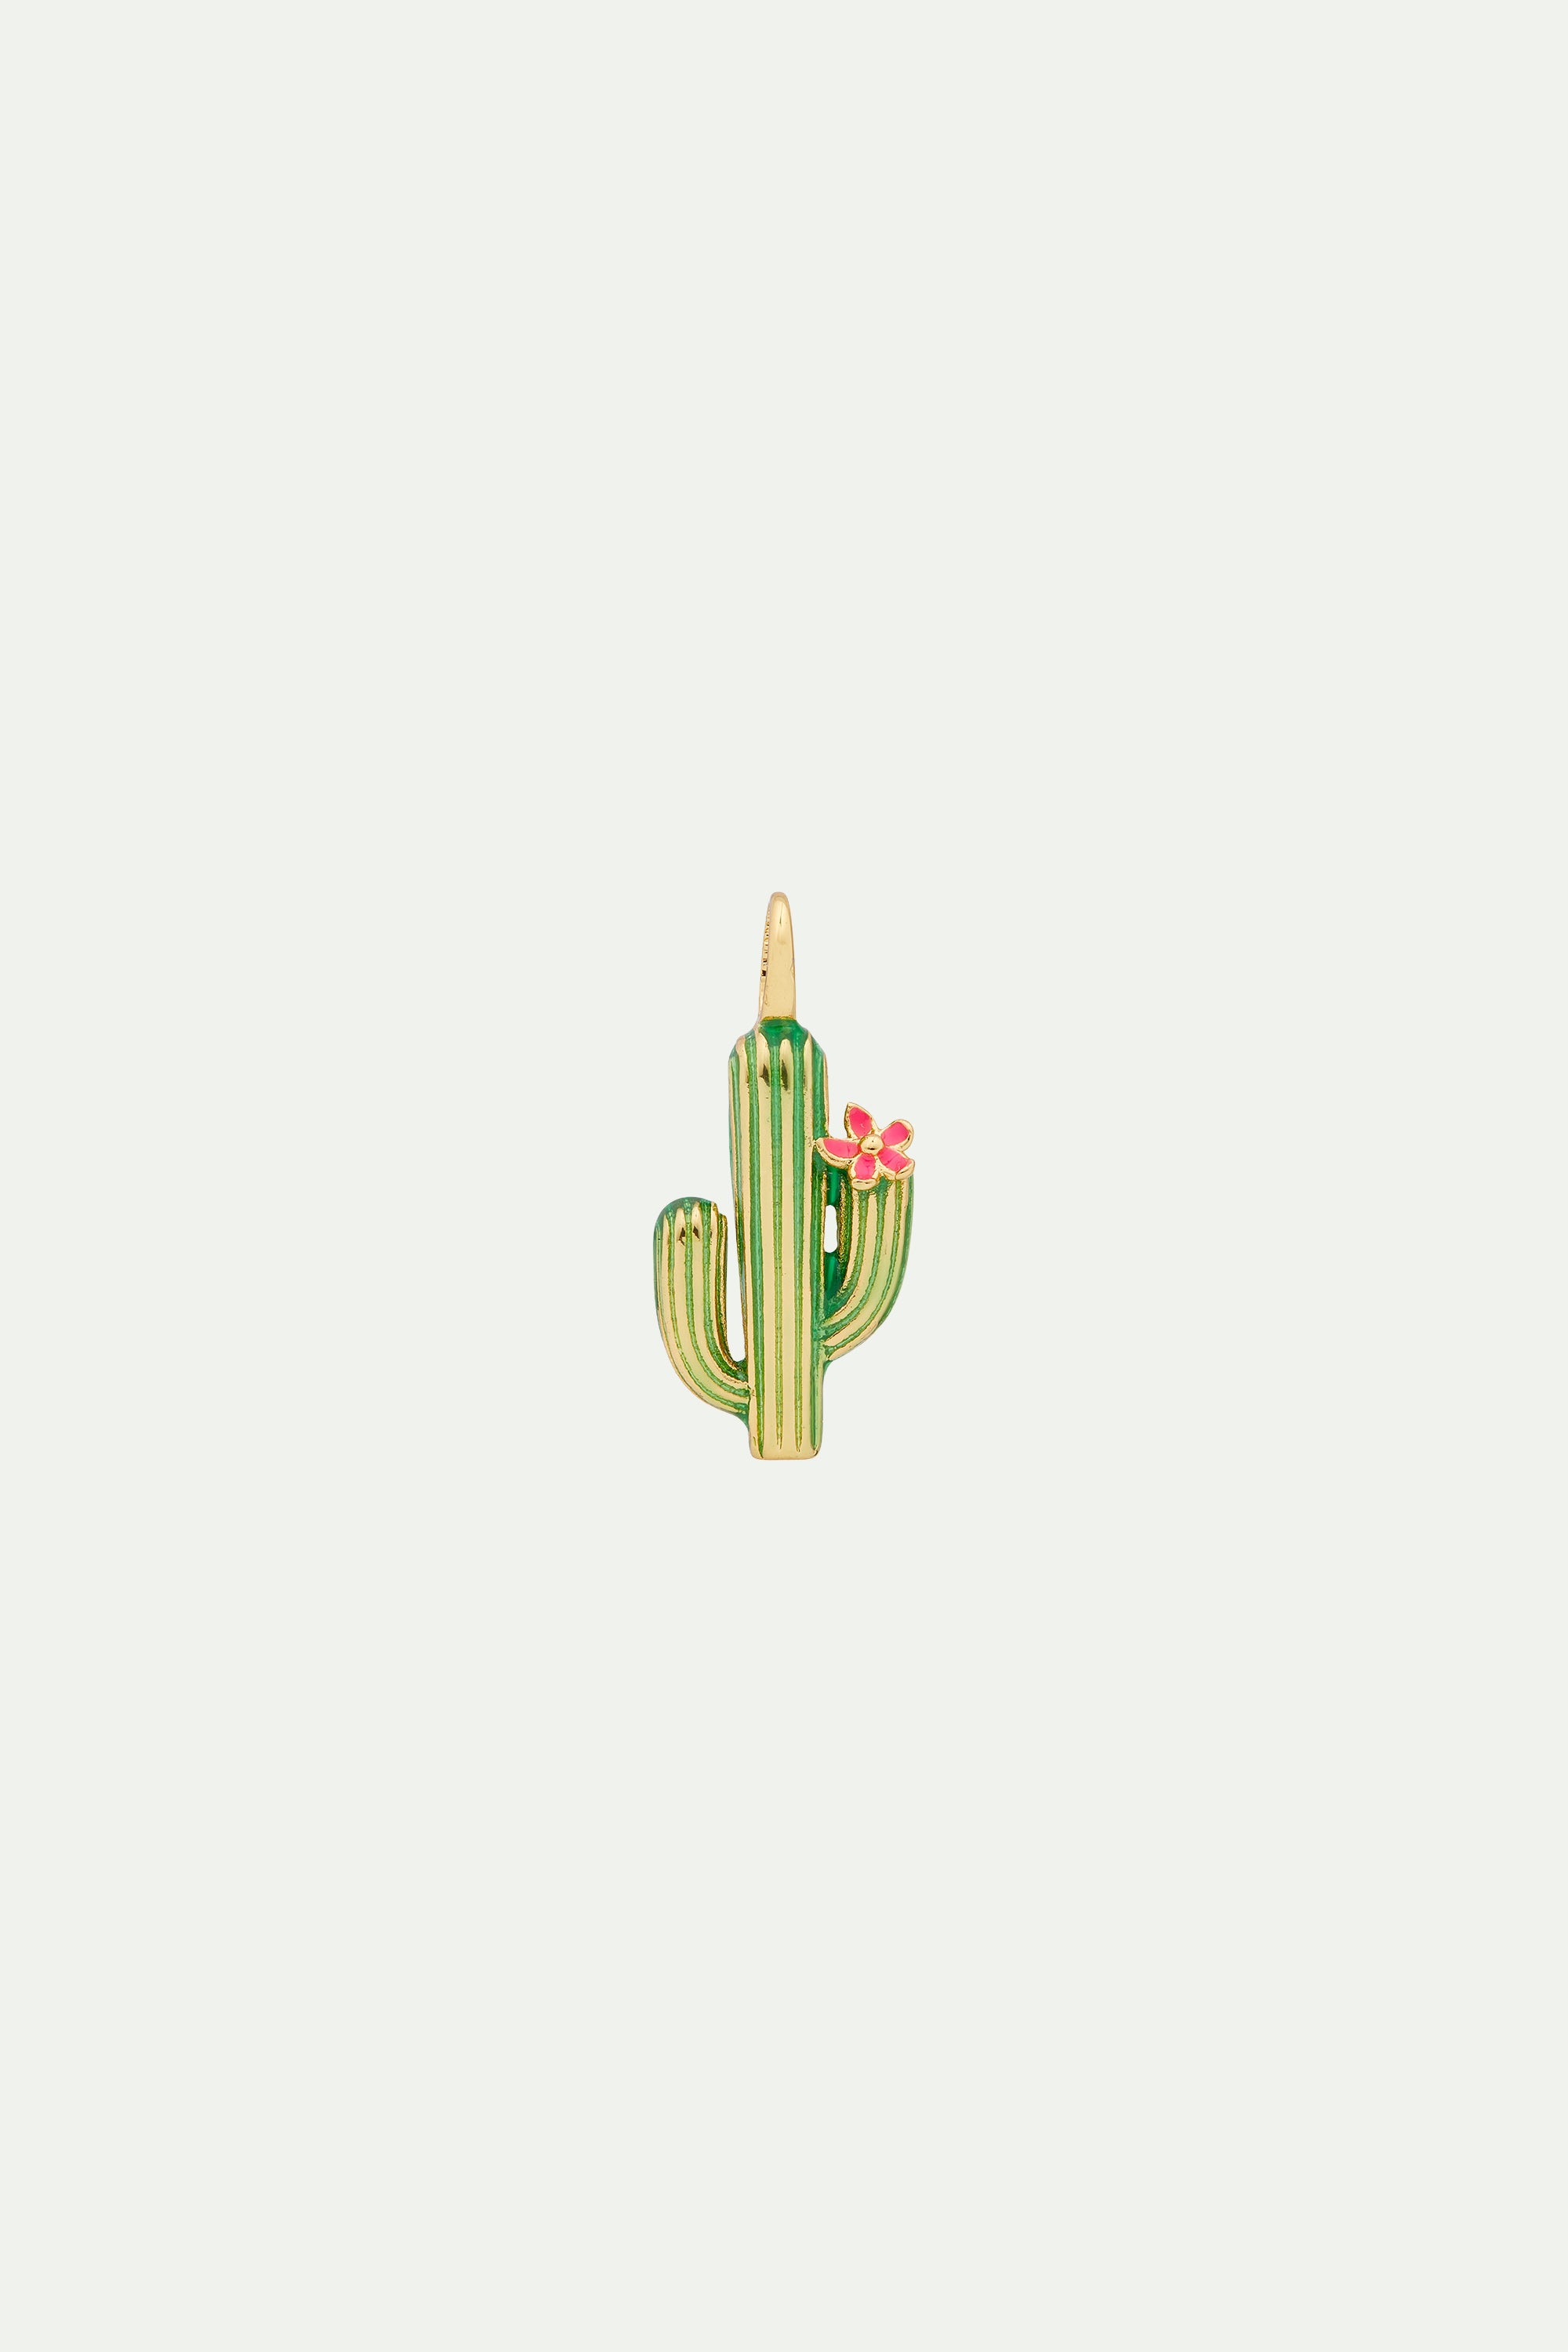 Charm's cactus